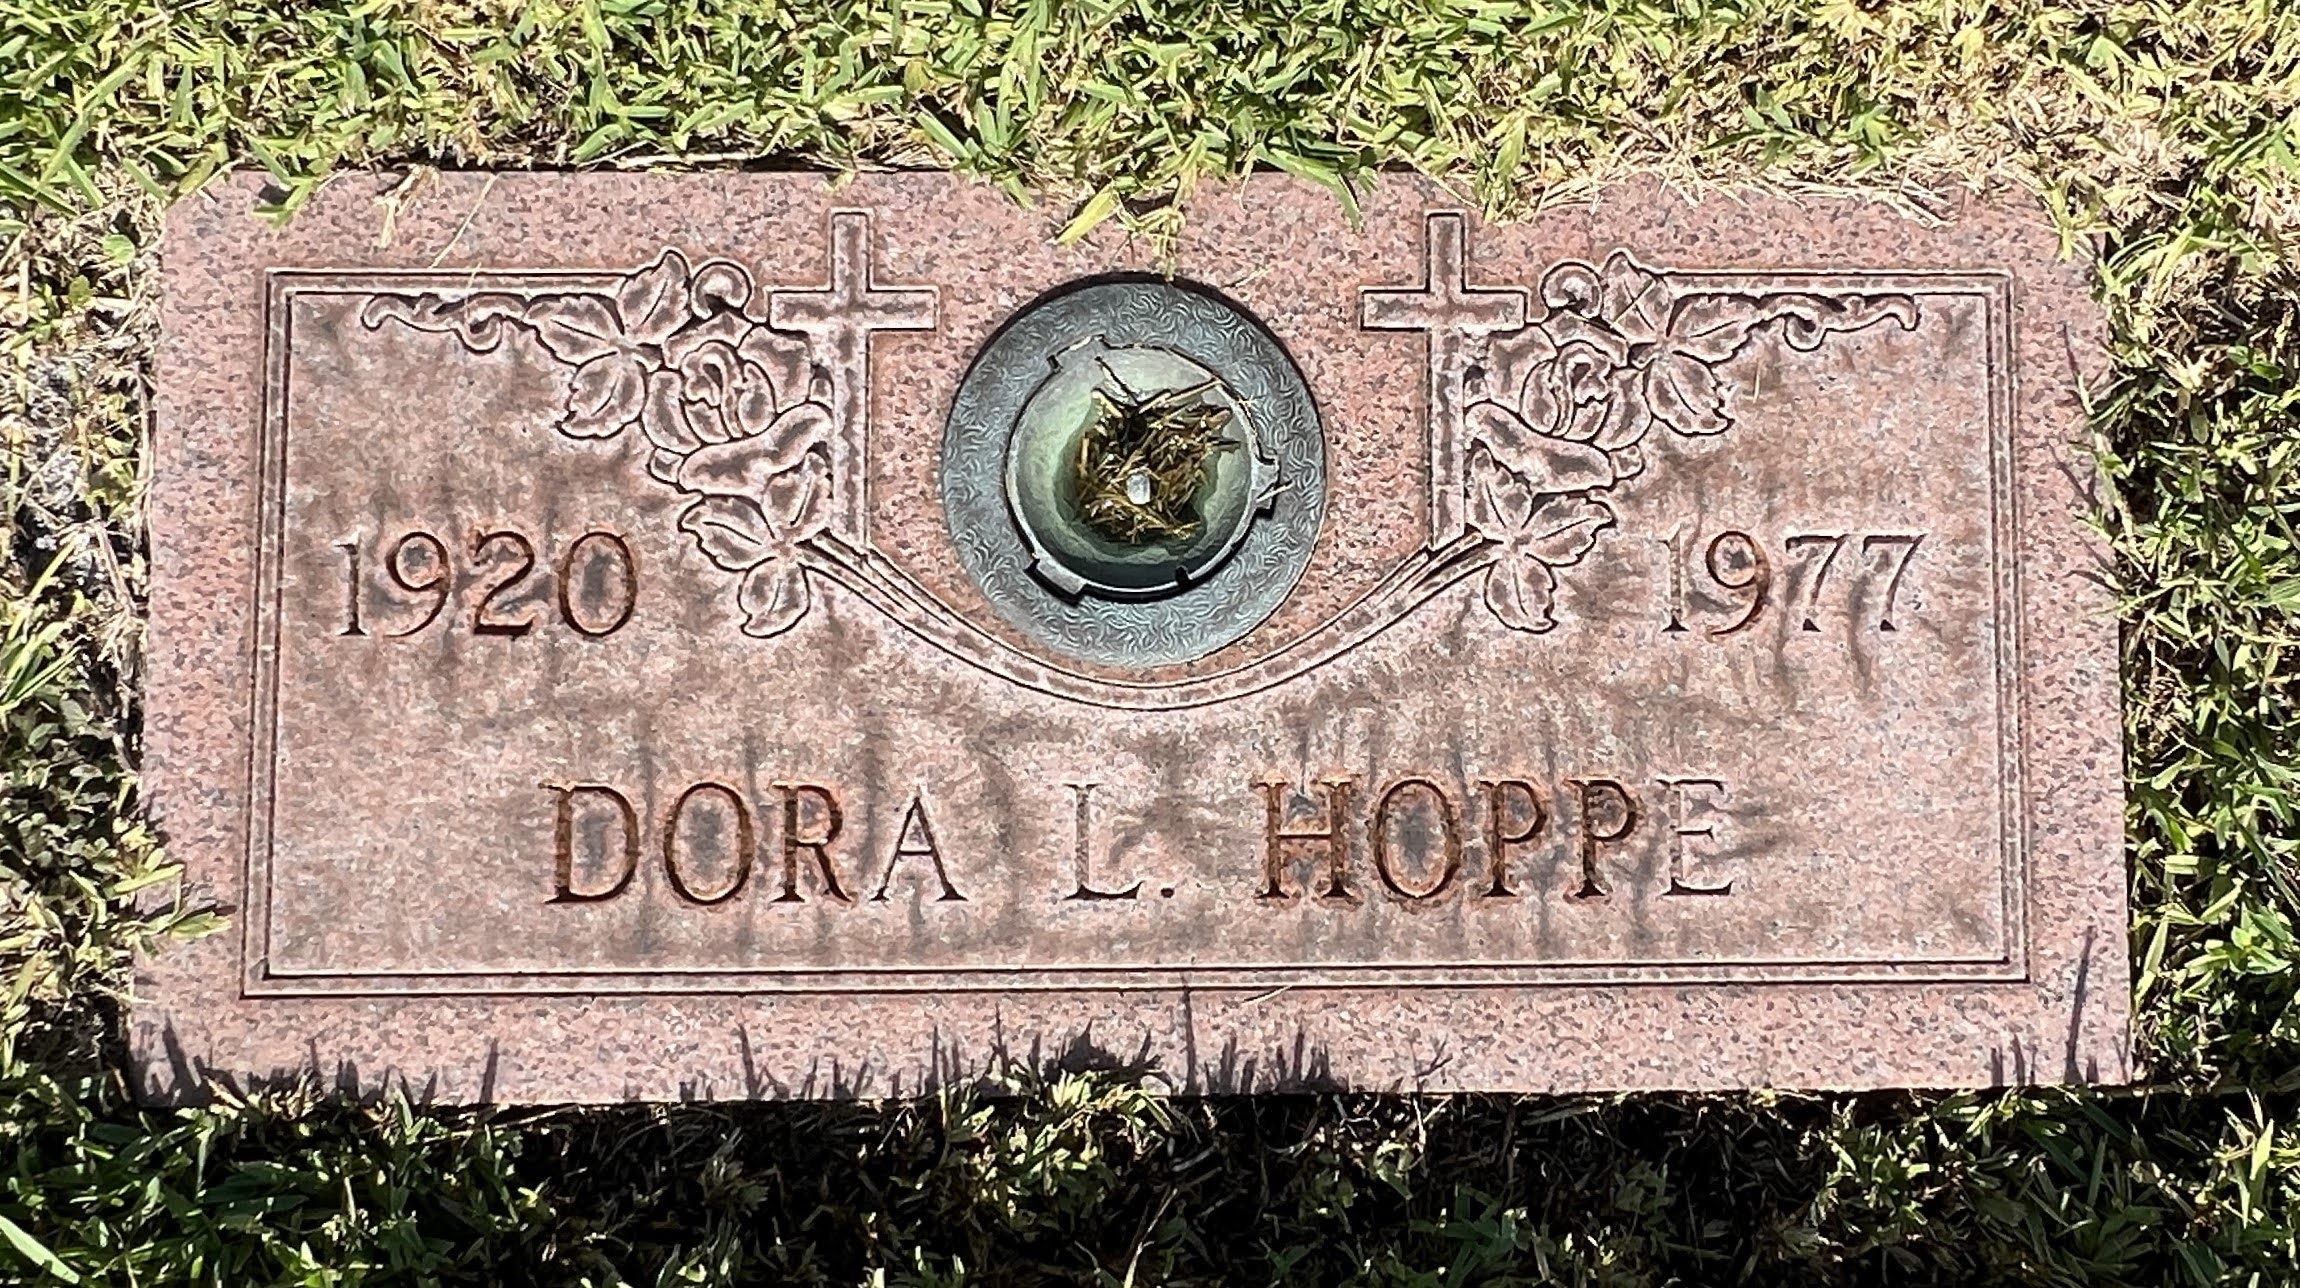 Dora L Hoppe